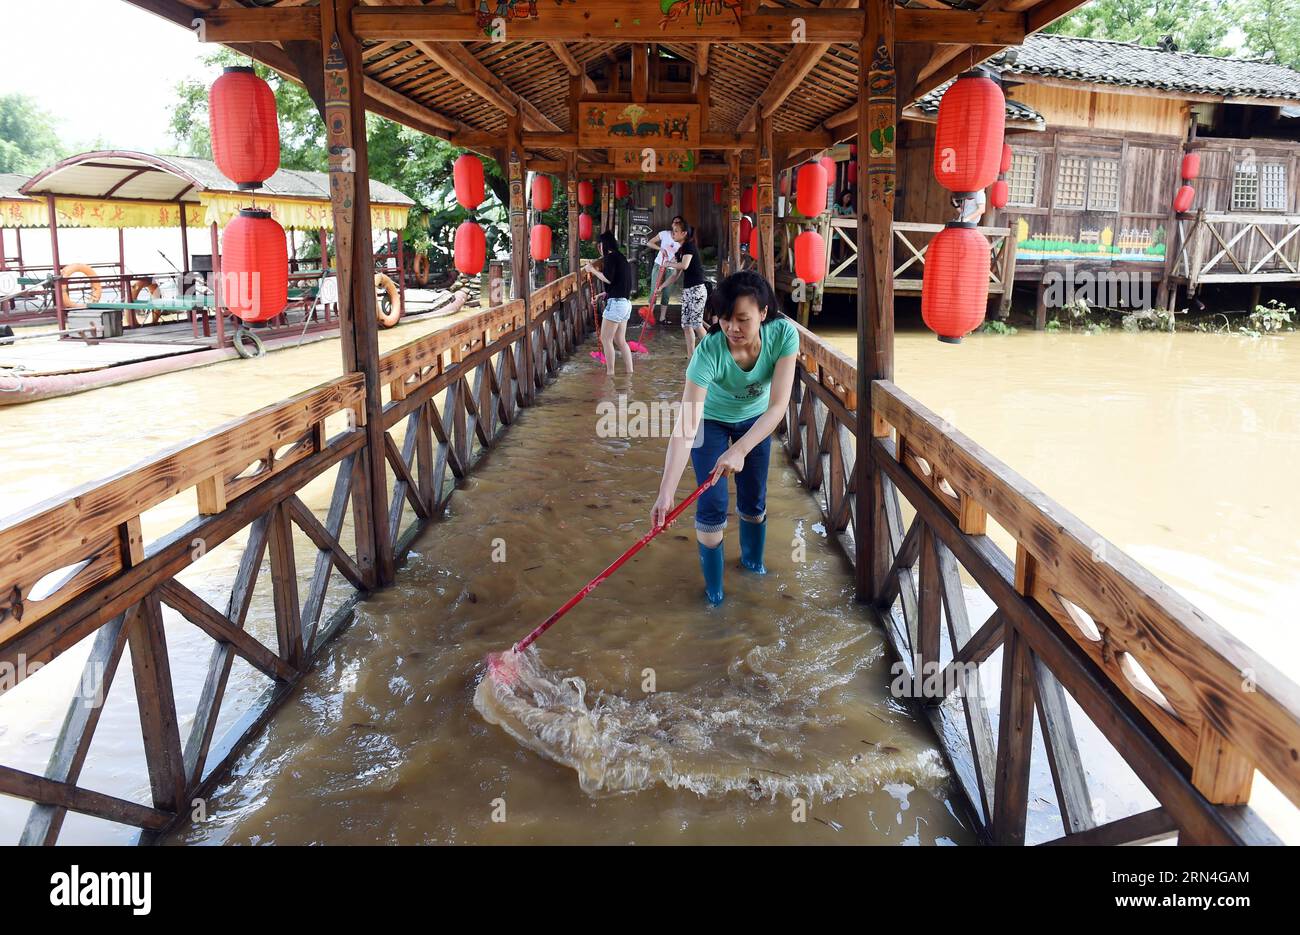 AKTUELLES ZEITGESCHEHEN Überschwemmungen im Südwesten Chinas (150520) -- GUILIN, 20. Mai 2015 -- Menschen versuchen, eine überflutete Holzbrücke in Guilin, Südchinas autonome Region Guangxi Zhuang, 20. Mai 2015, zu reinigen. Als mehrere Orte in Guangxi von starkem Regen heimgesucht wurden, gab das örtliche Hydrologie- und Wasserressourcenbüro am Mittwoch eine blaue Warnung vor Überschwemmungen aus. ) (zhs) CHINA-GUANGXI-FLUTWARNUNG (CN) LuxBoan PUBLICATIONxNOTxINxCHN Nachrichten aktuelle Ereignisse Überschwemmungen in Südwestchina 150520 Guilin 20. Mai 2015 Prominente versuchen, eine überflutete Holzbrücke in Guilin Südchina S Guangxi Zhuang Aut zu reinigen Stockfoto